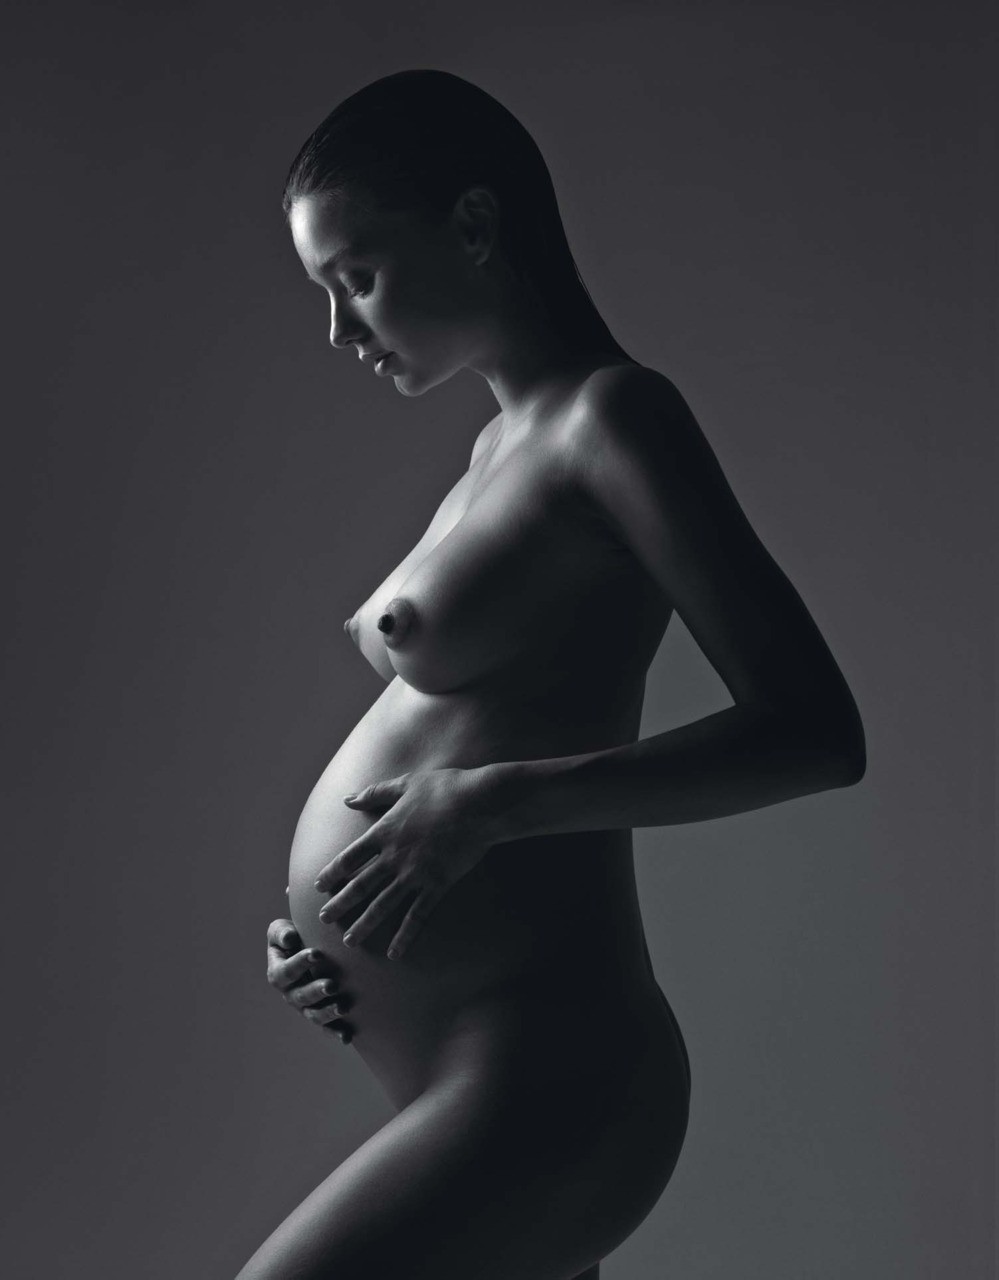 22 semanas de gravidez